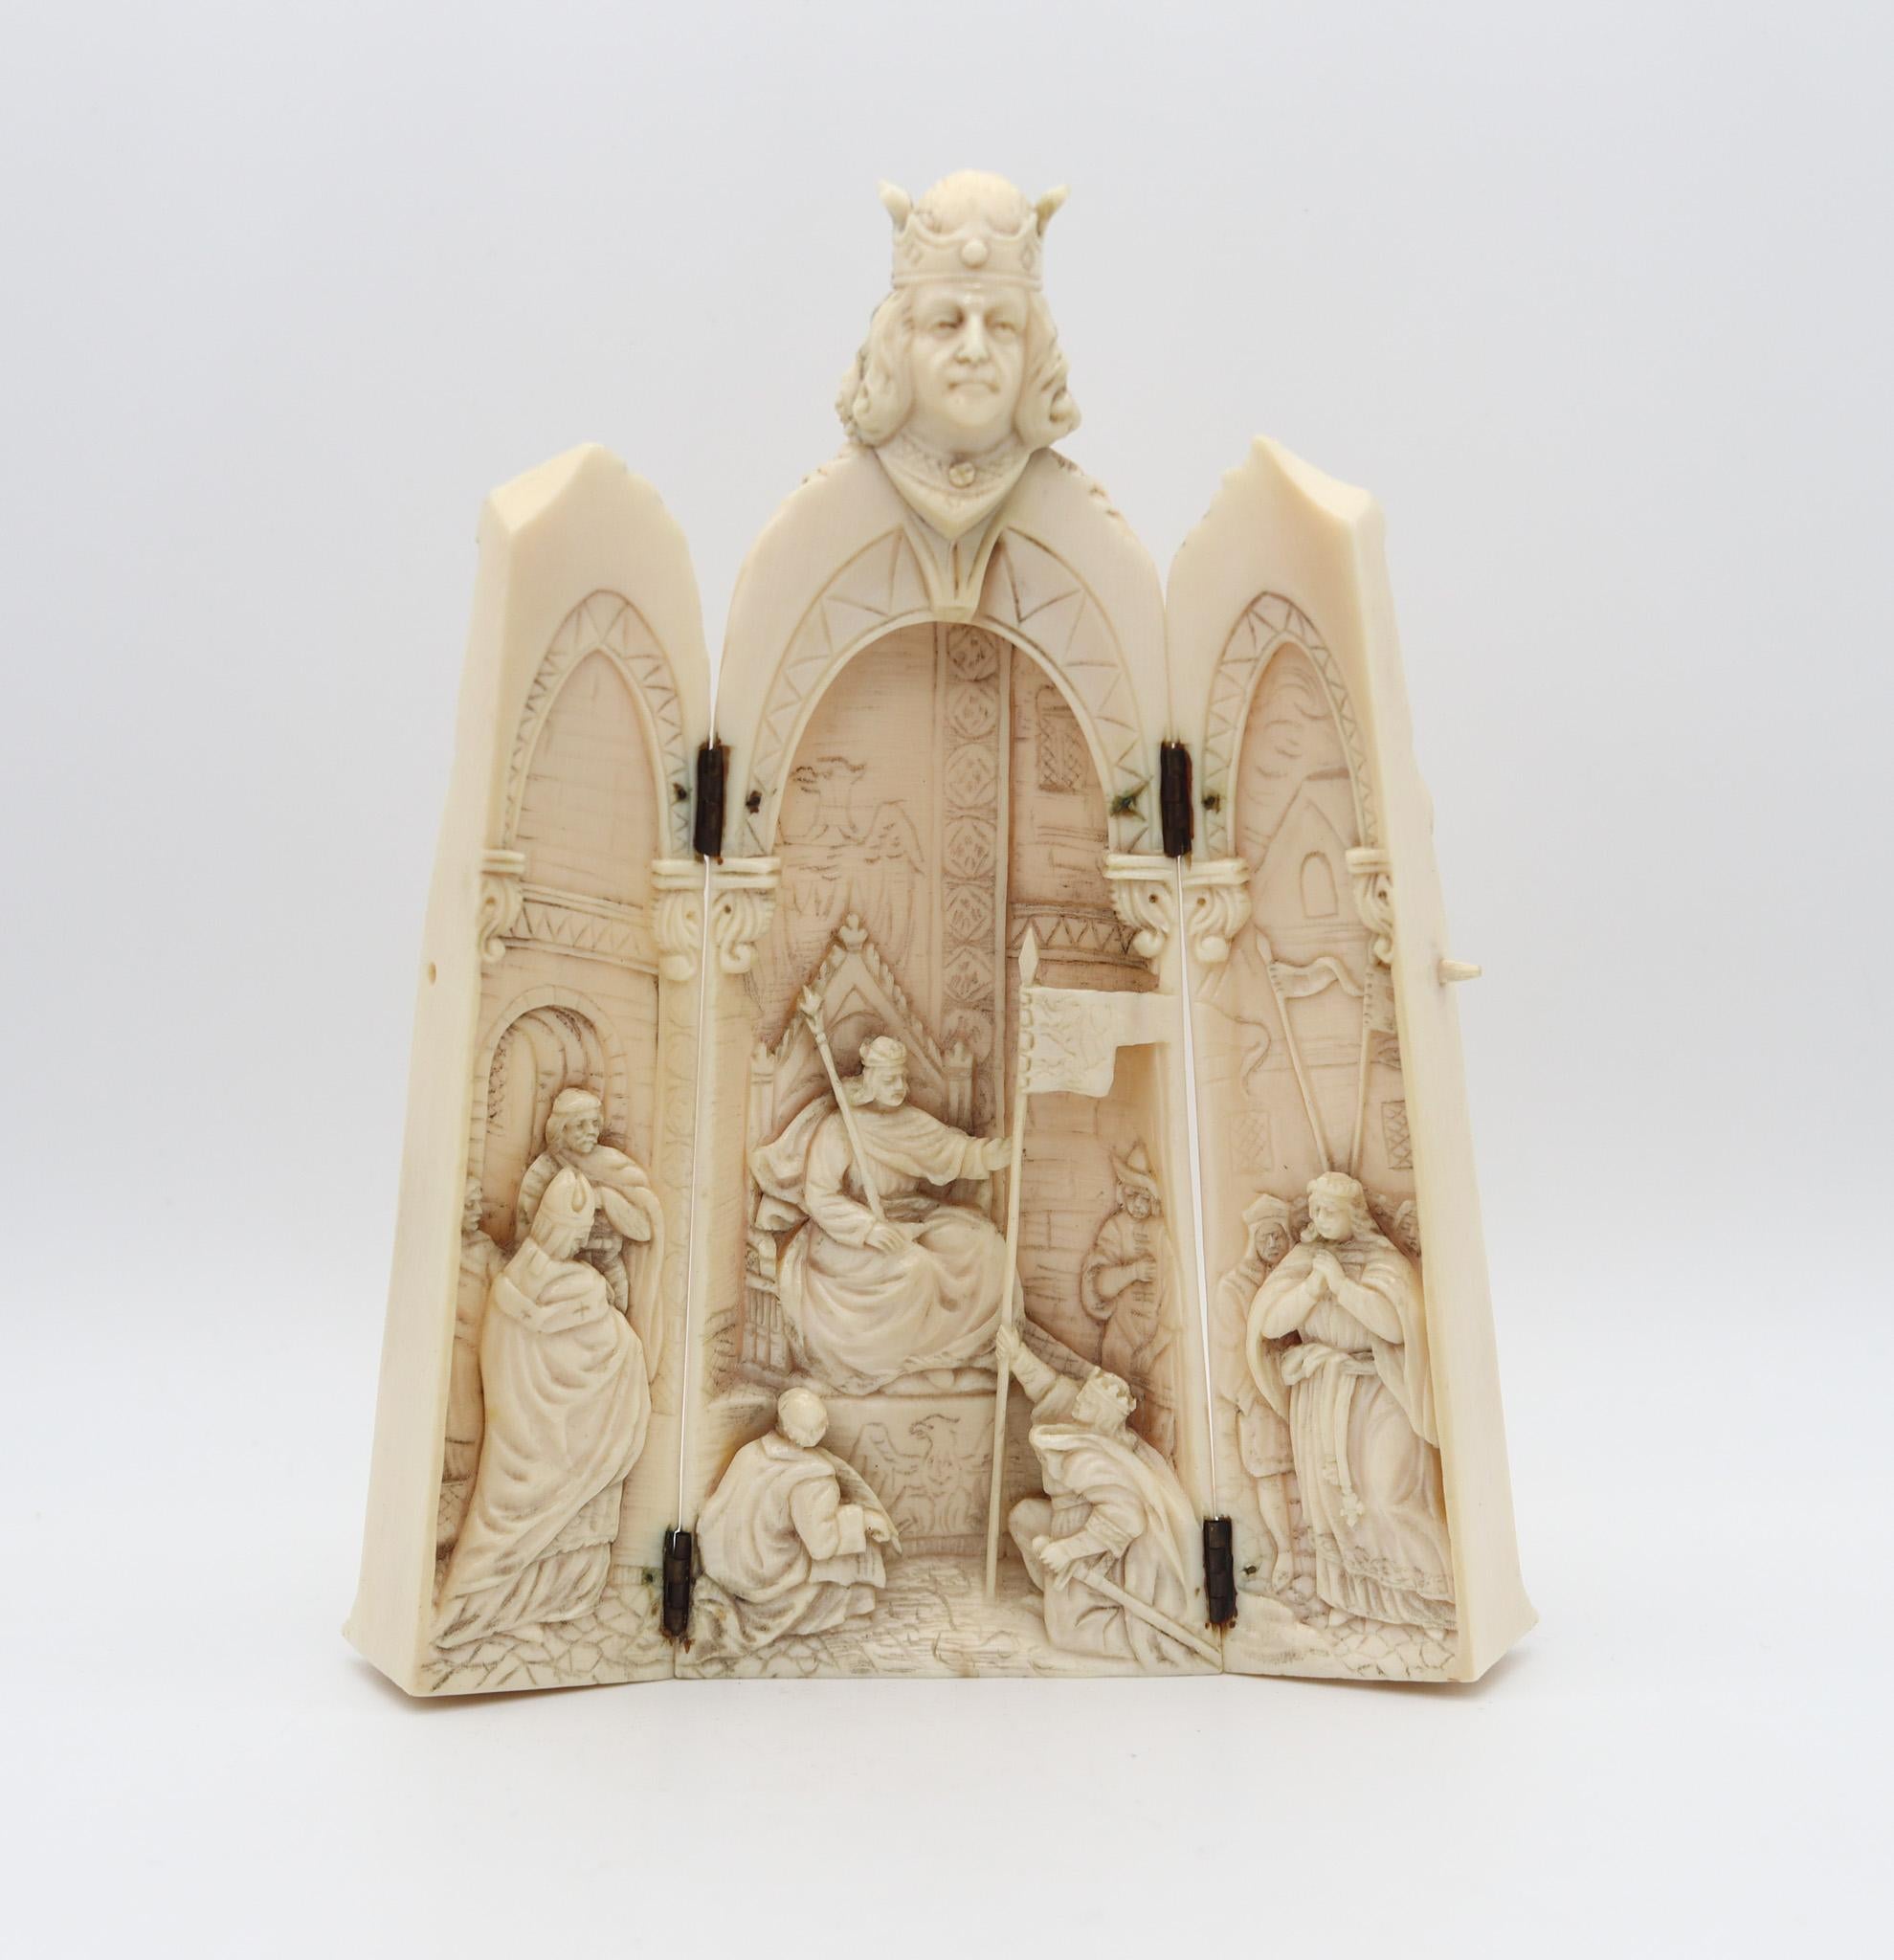 Néo-gothique Triptyque de sculpture flamande de 1850 représentant l'empereur Charlemagne trônant en vente